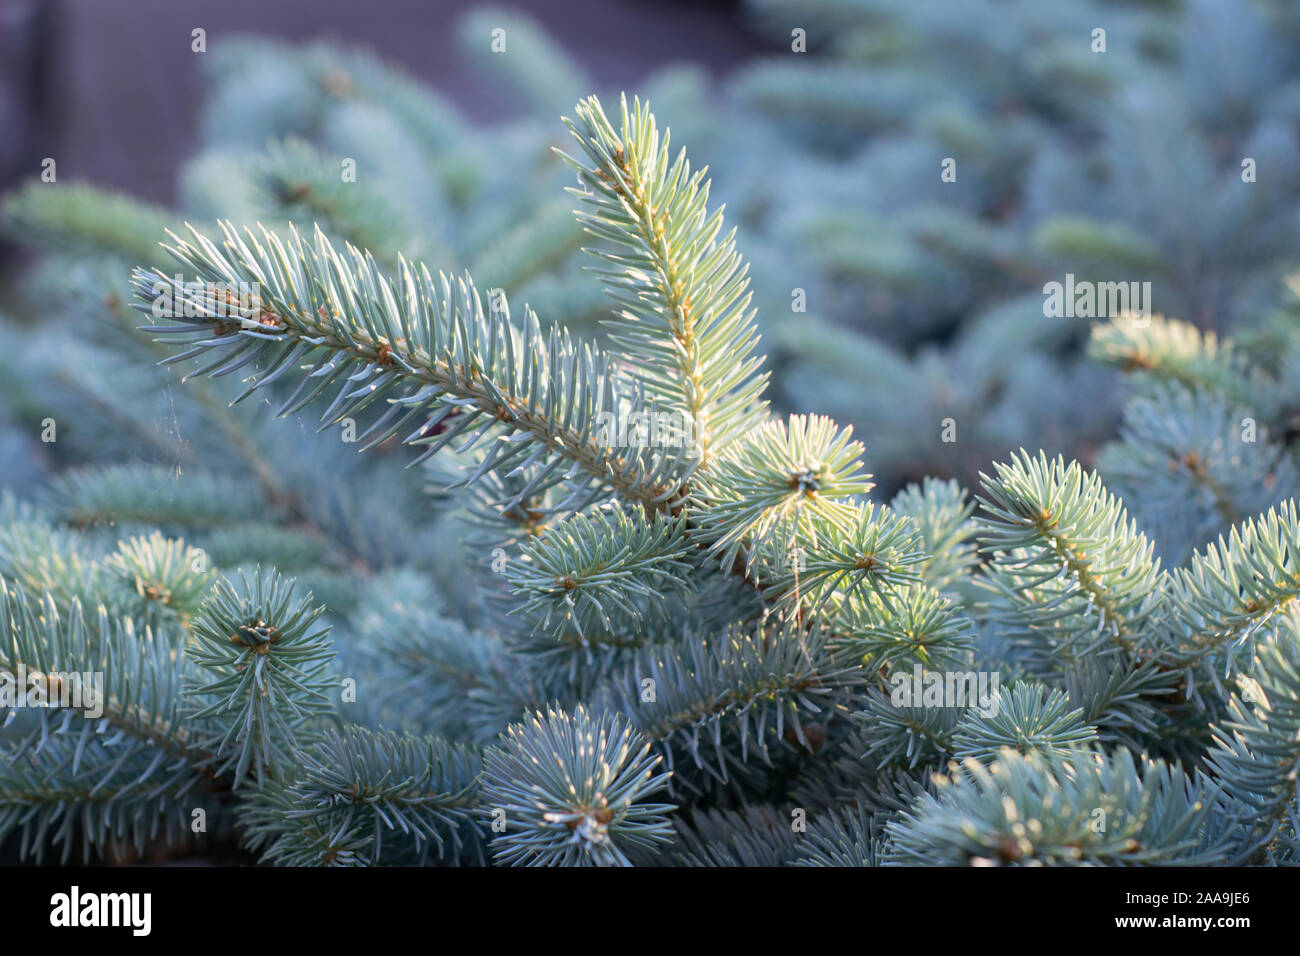 Belle couleur argent bleu l'épinette du Colorado (Picea pungens 'Glauca' ) dans la lumière du soir Banque D'Images